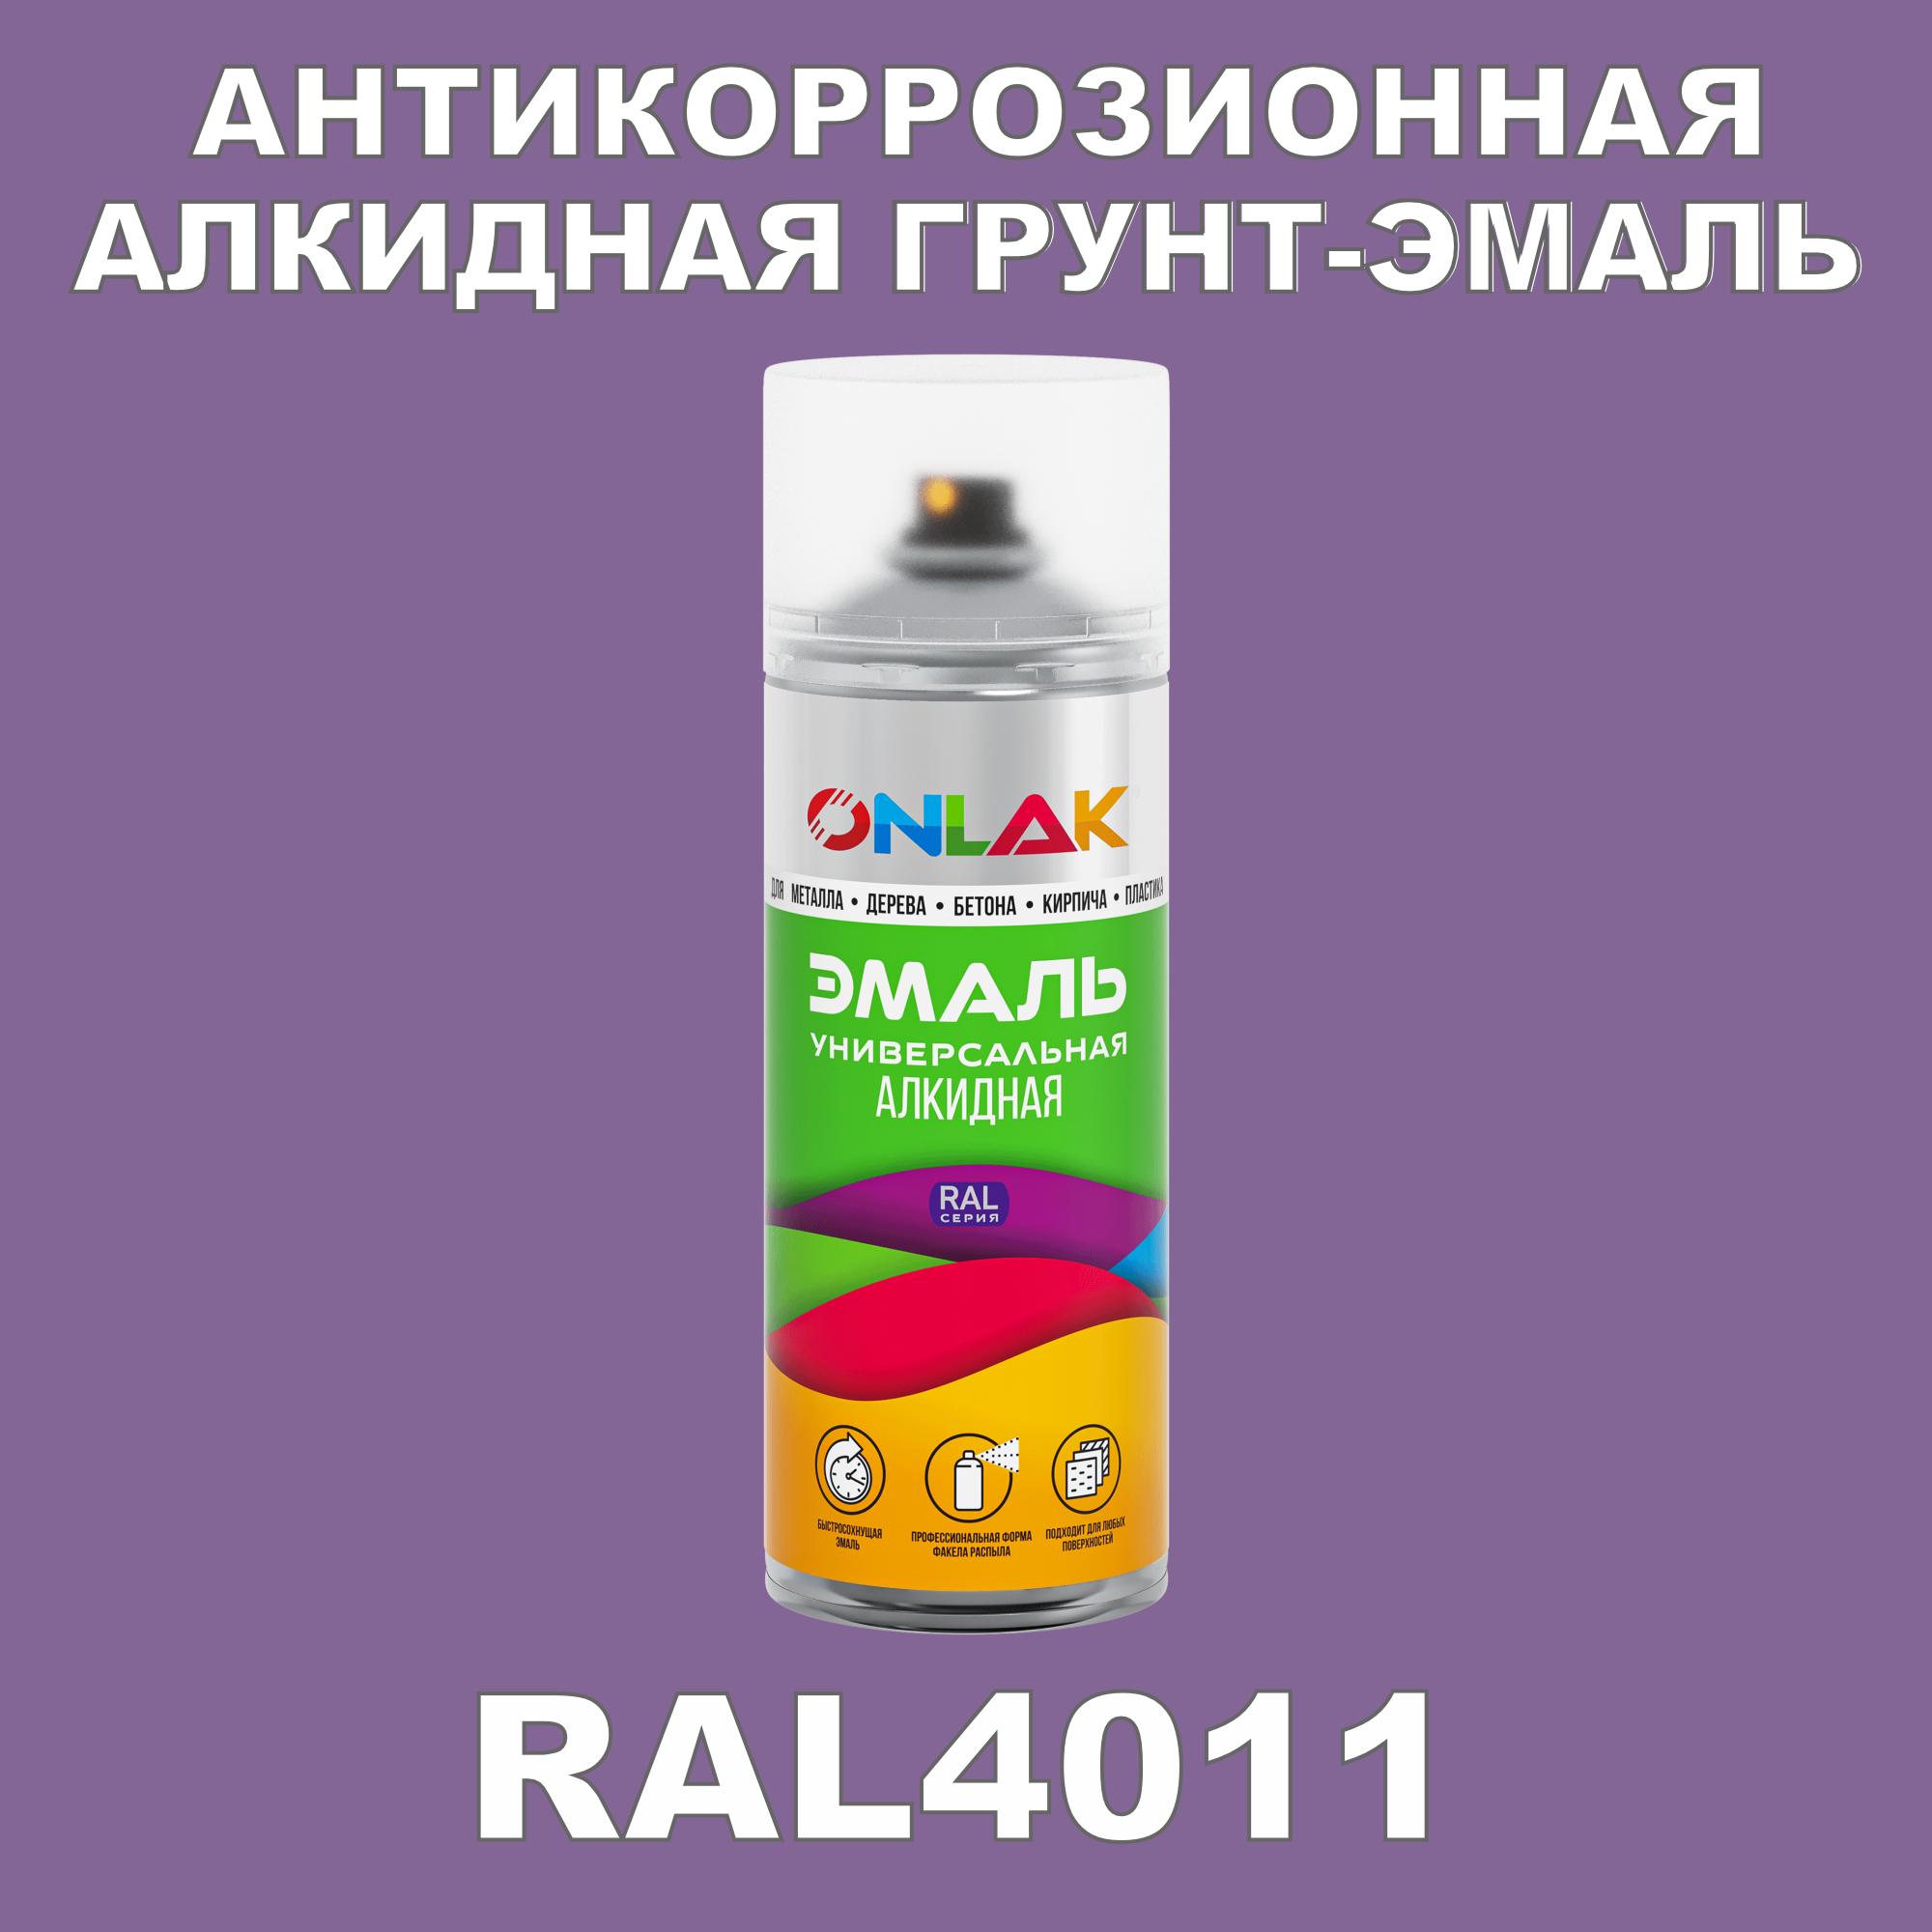 Антикоррозионная грунт-эмаль ONLAK RAL 4011,фиолетовый,550 мл